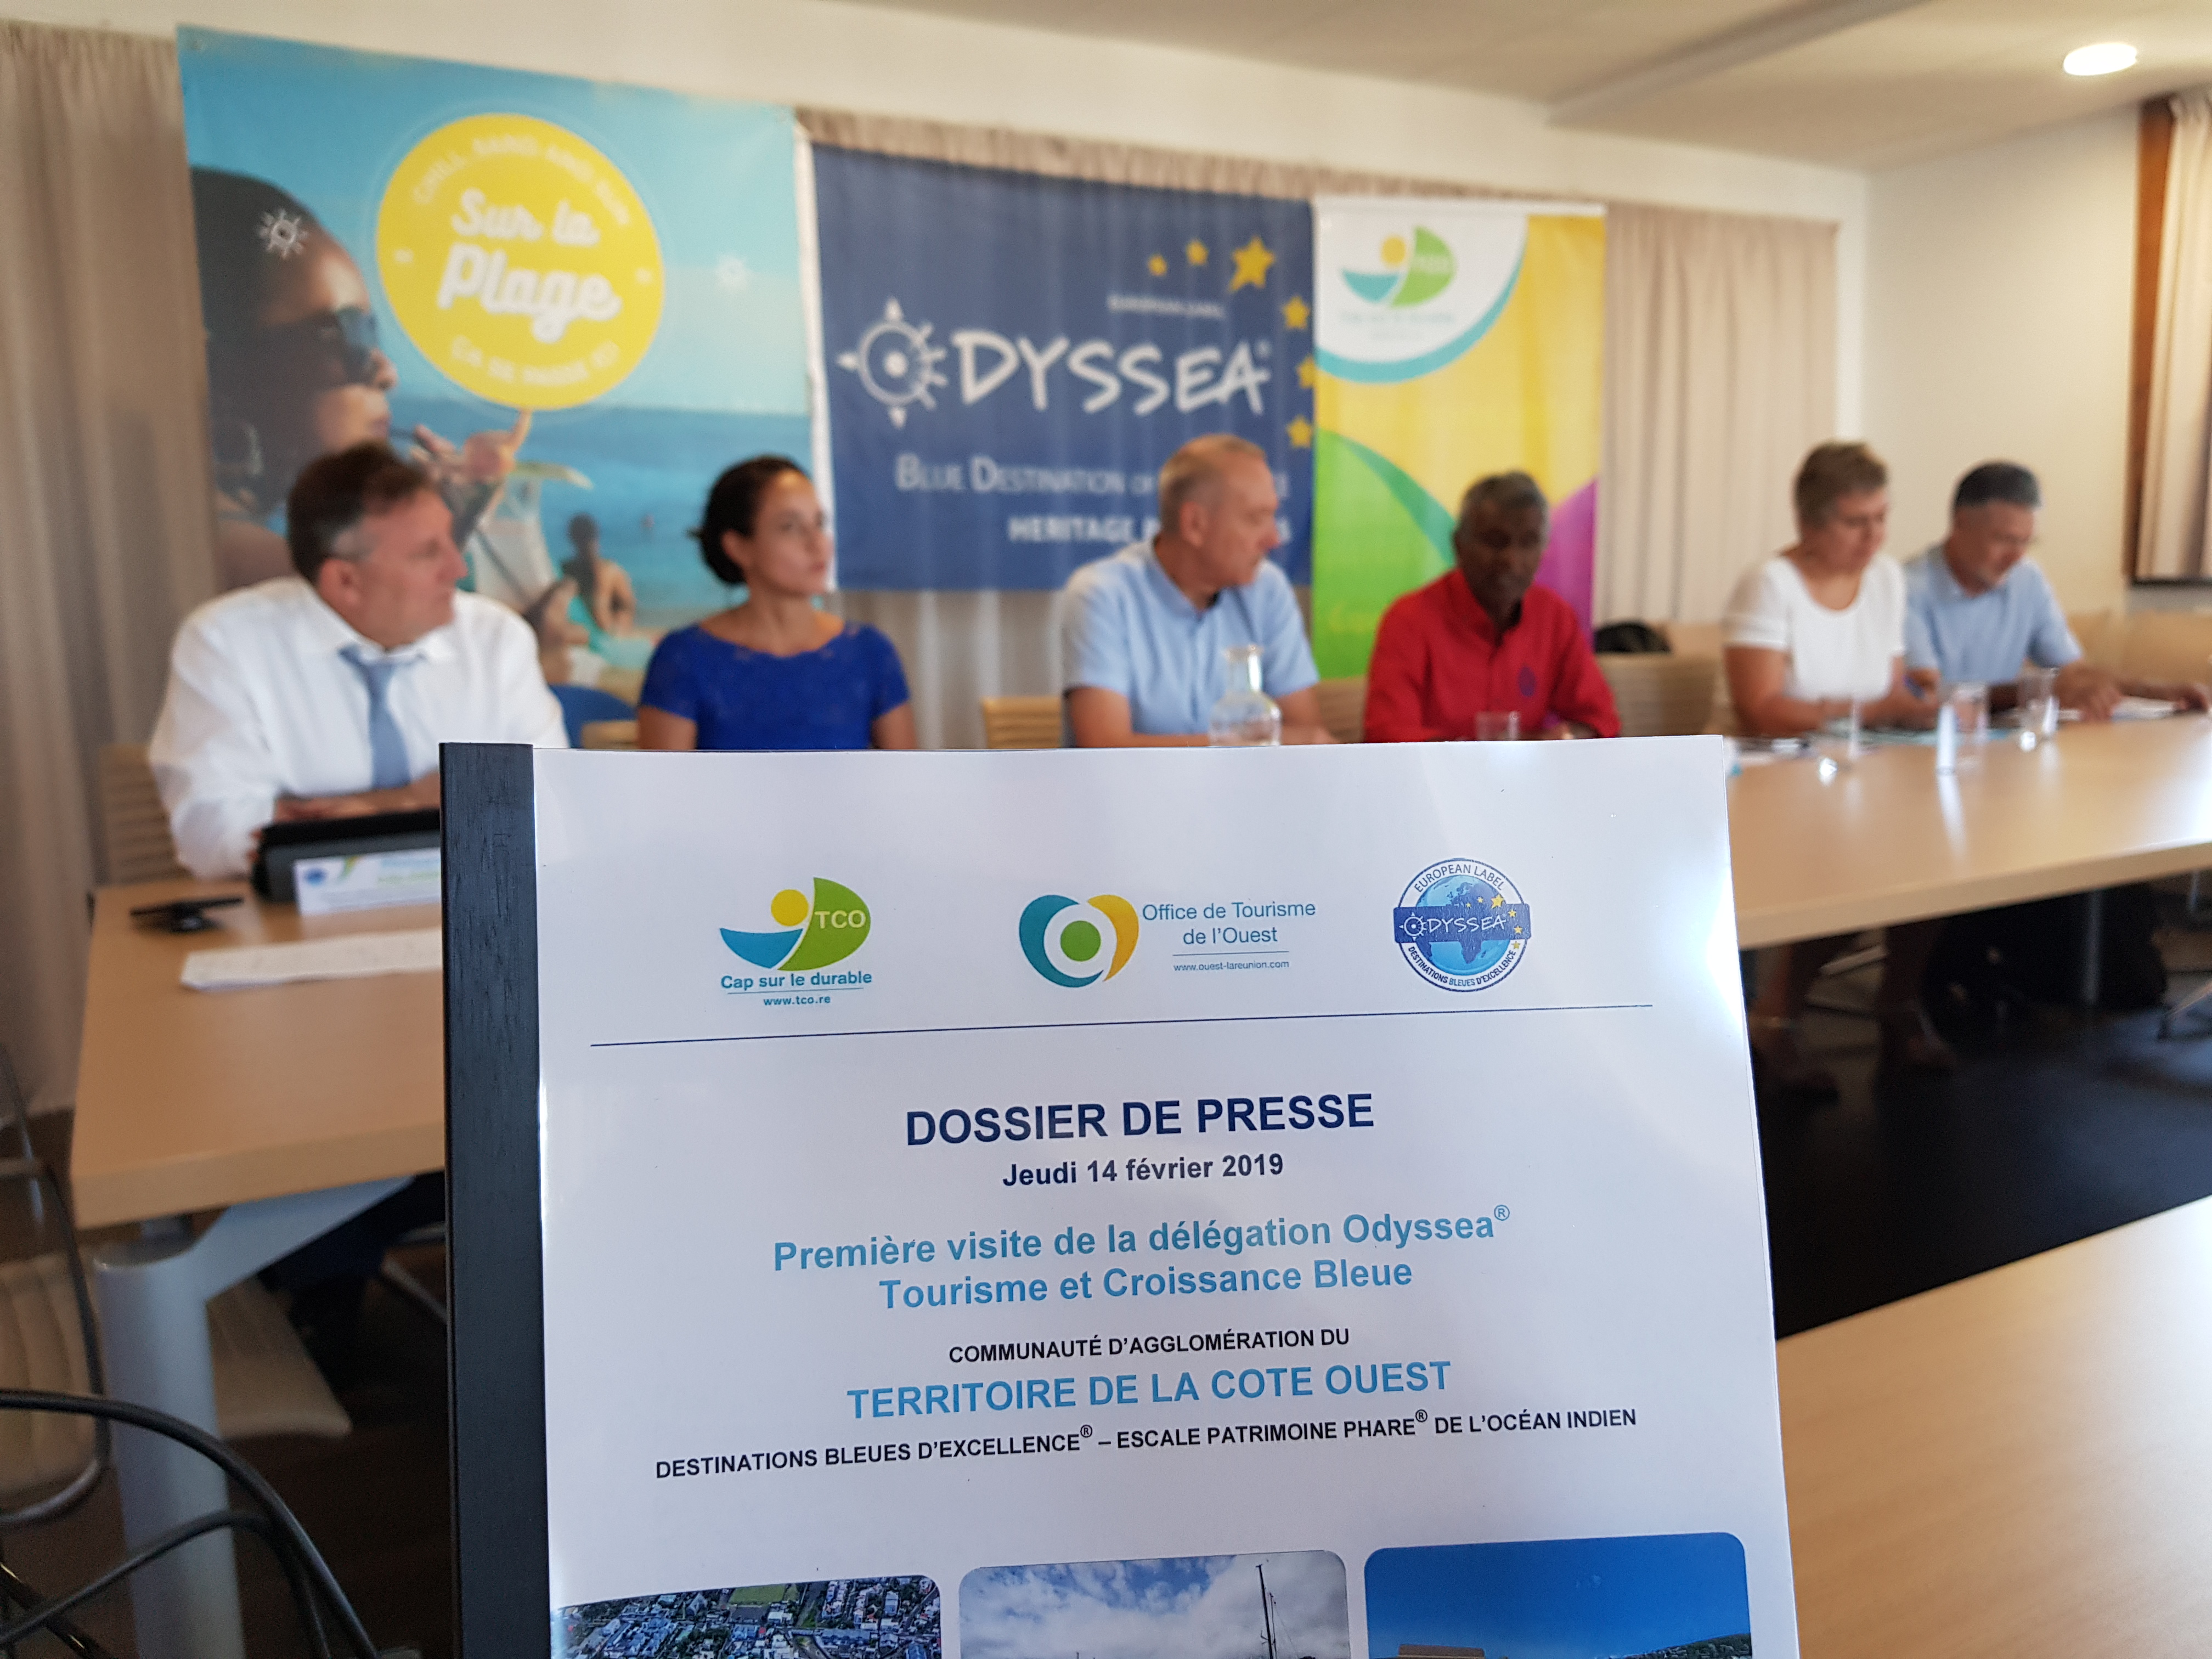 Conférence de presse sur la candidature du Territoire de la Côte Ouest au label européen Odyssea